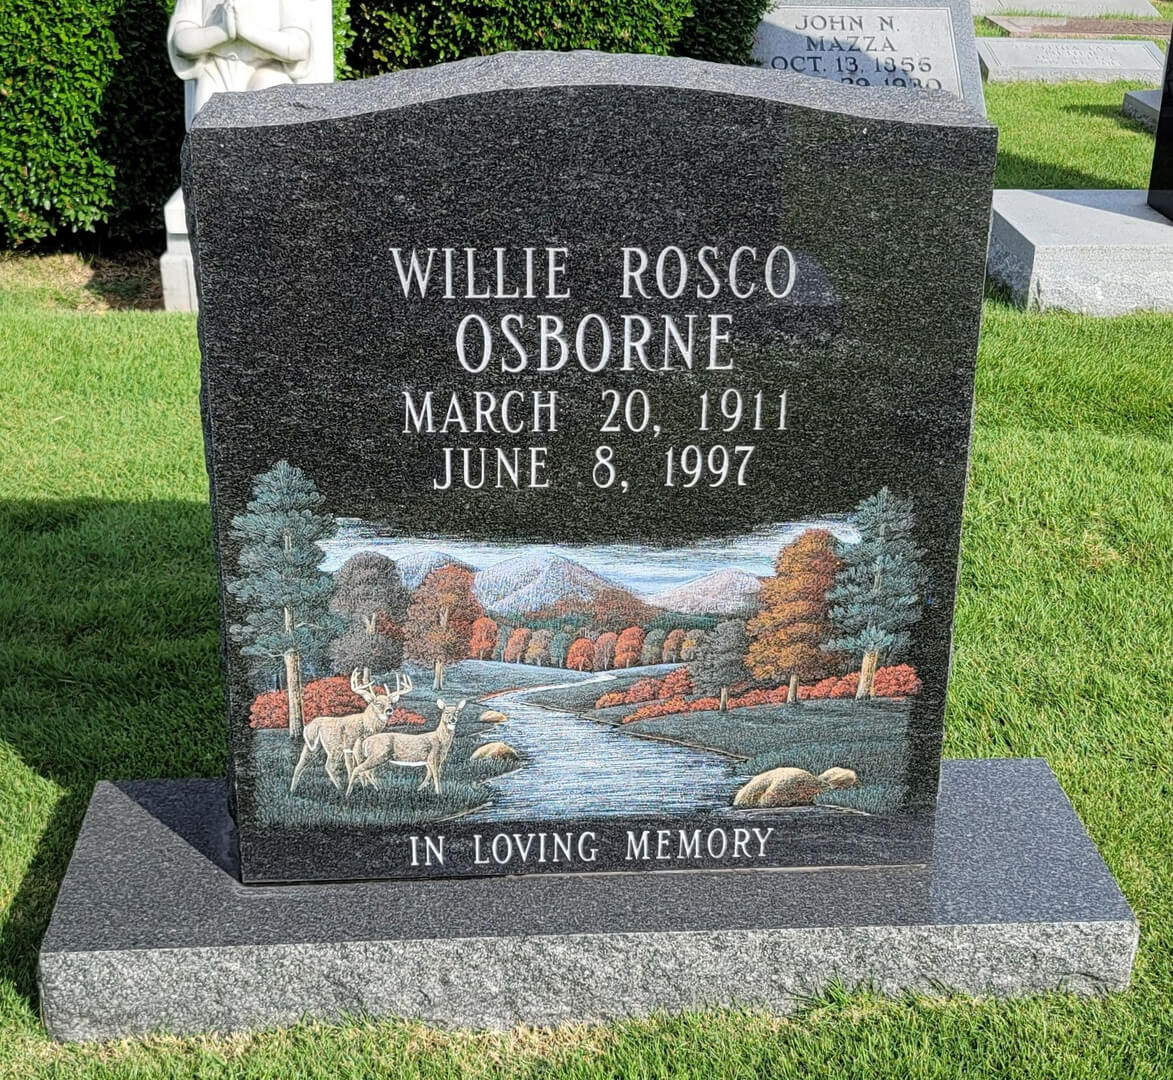 A memorial slab for Willie Rosco Osborne